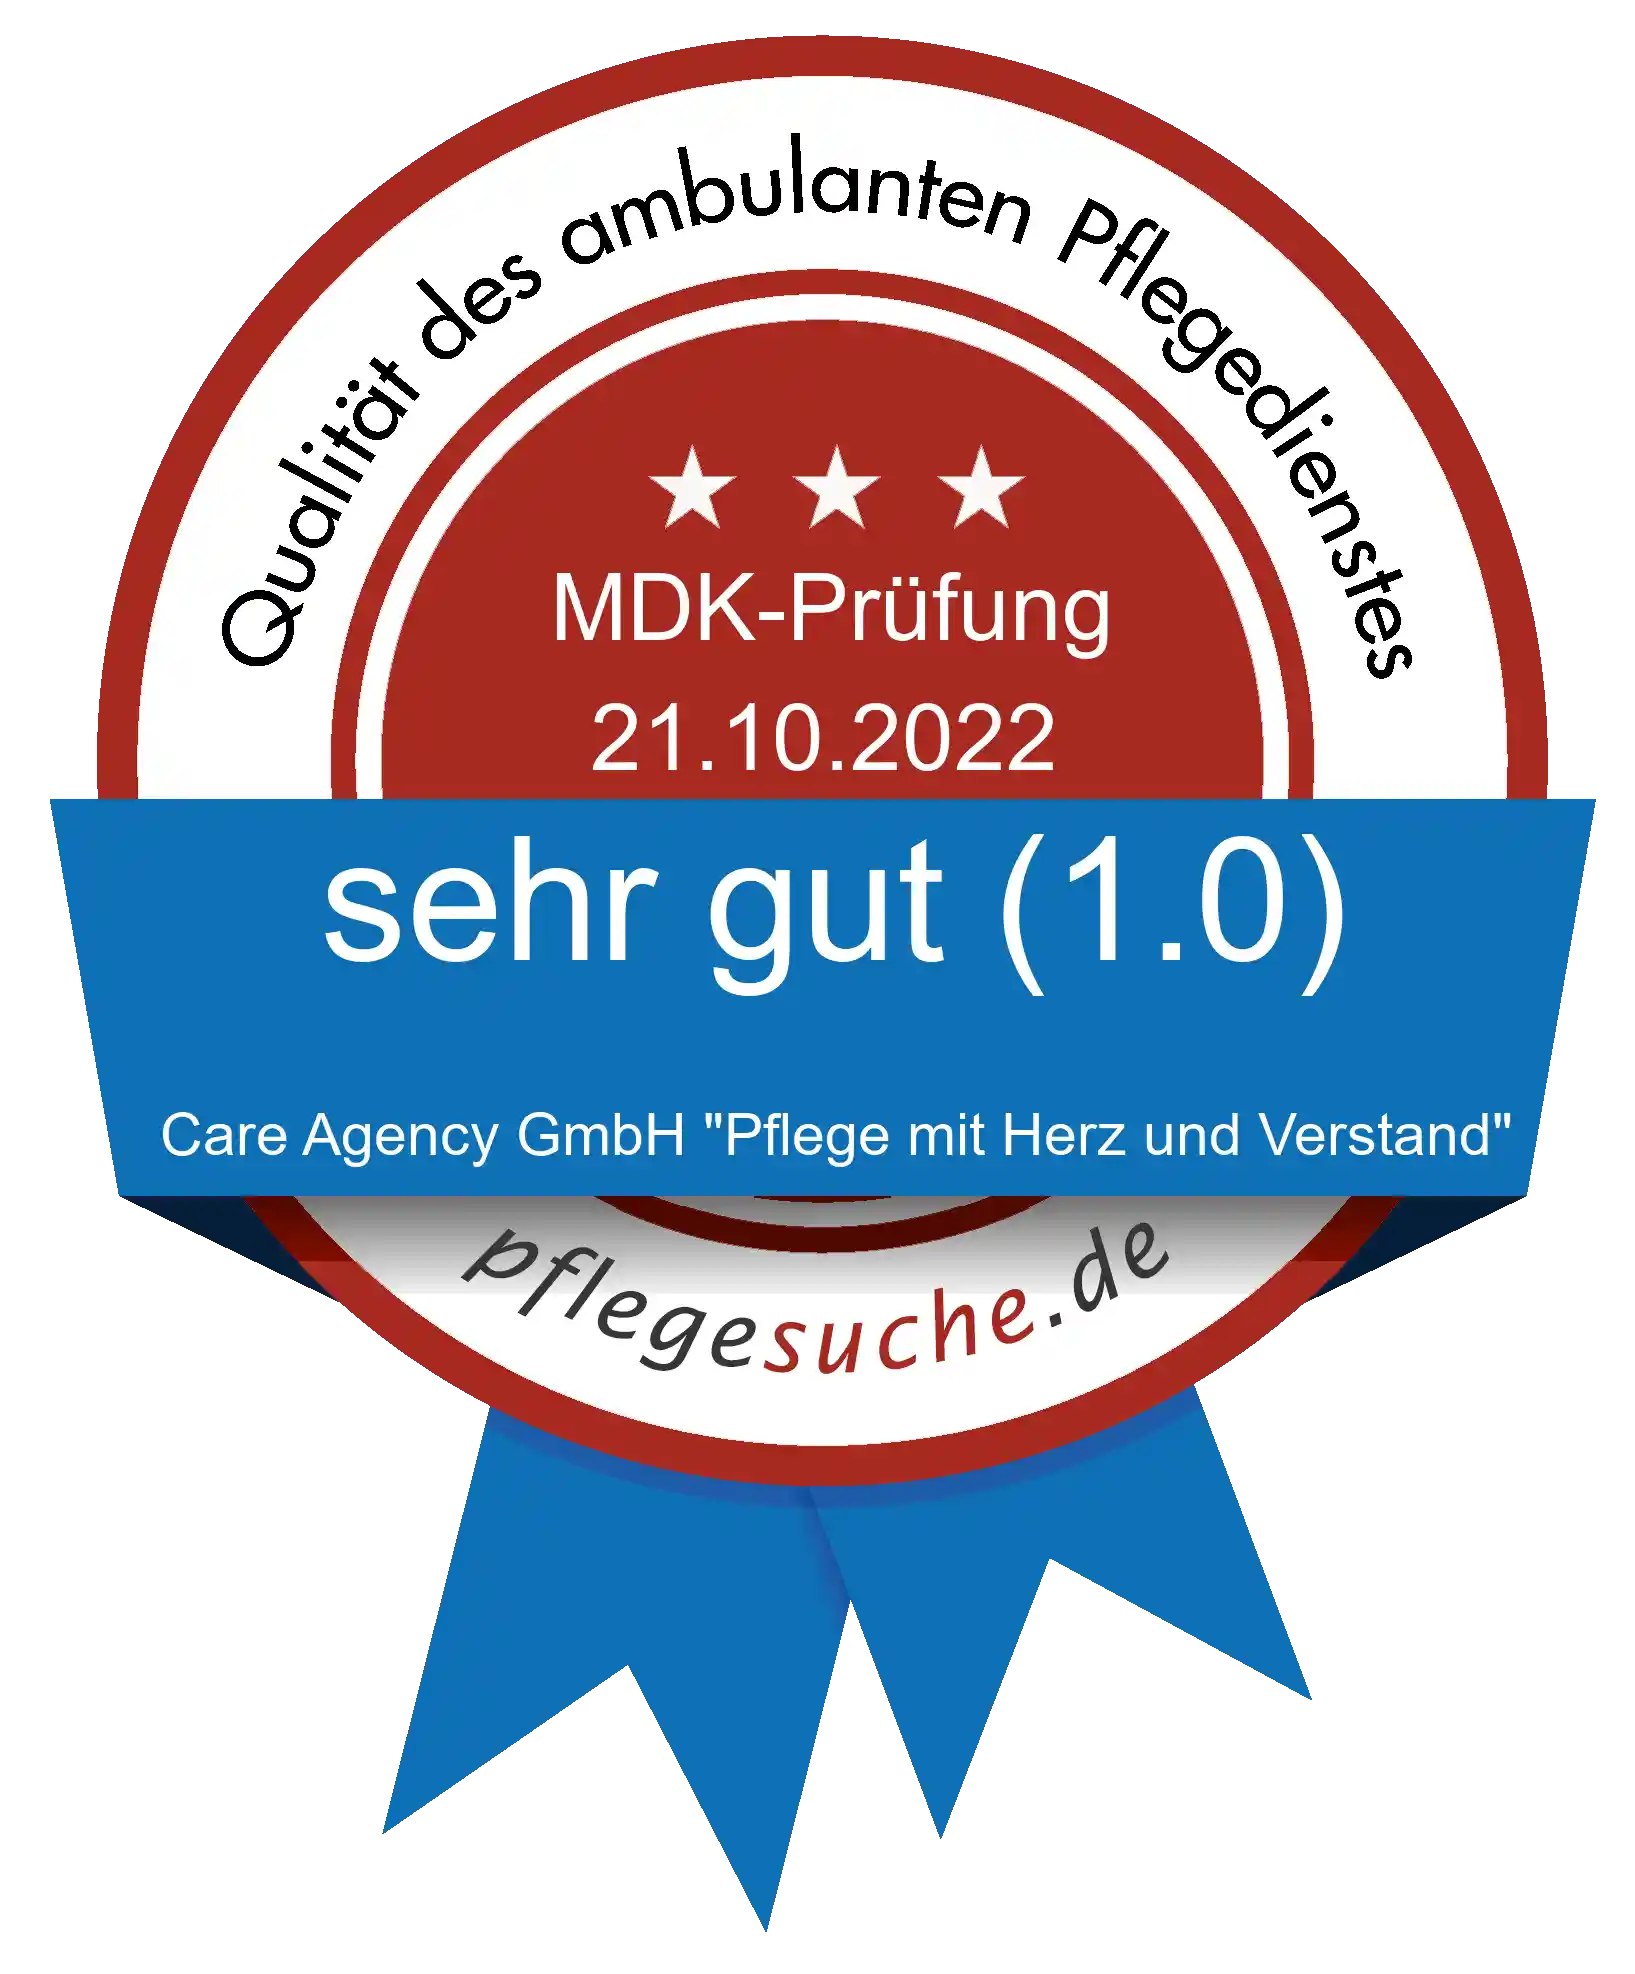 Siegel Benotung: Care Agency GmbH "Pflege mit Herz und Verstand"